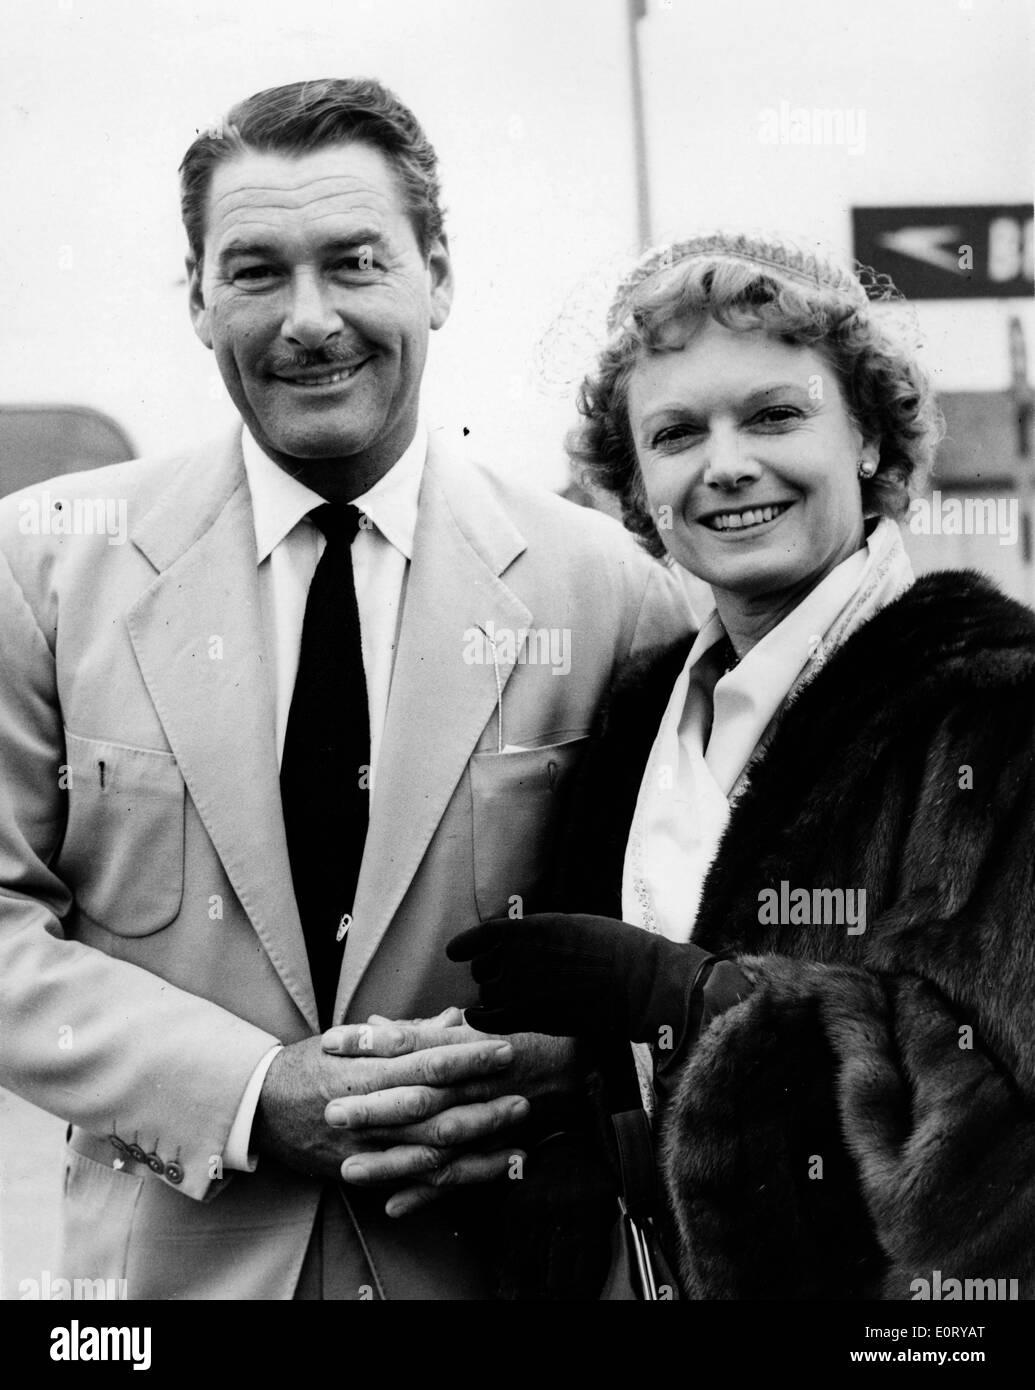 Schauspieler Errol Flynn am Flughafen mit einer Frau Stockfoto